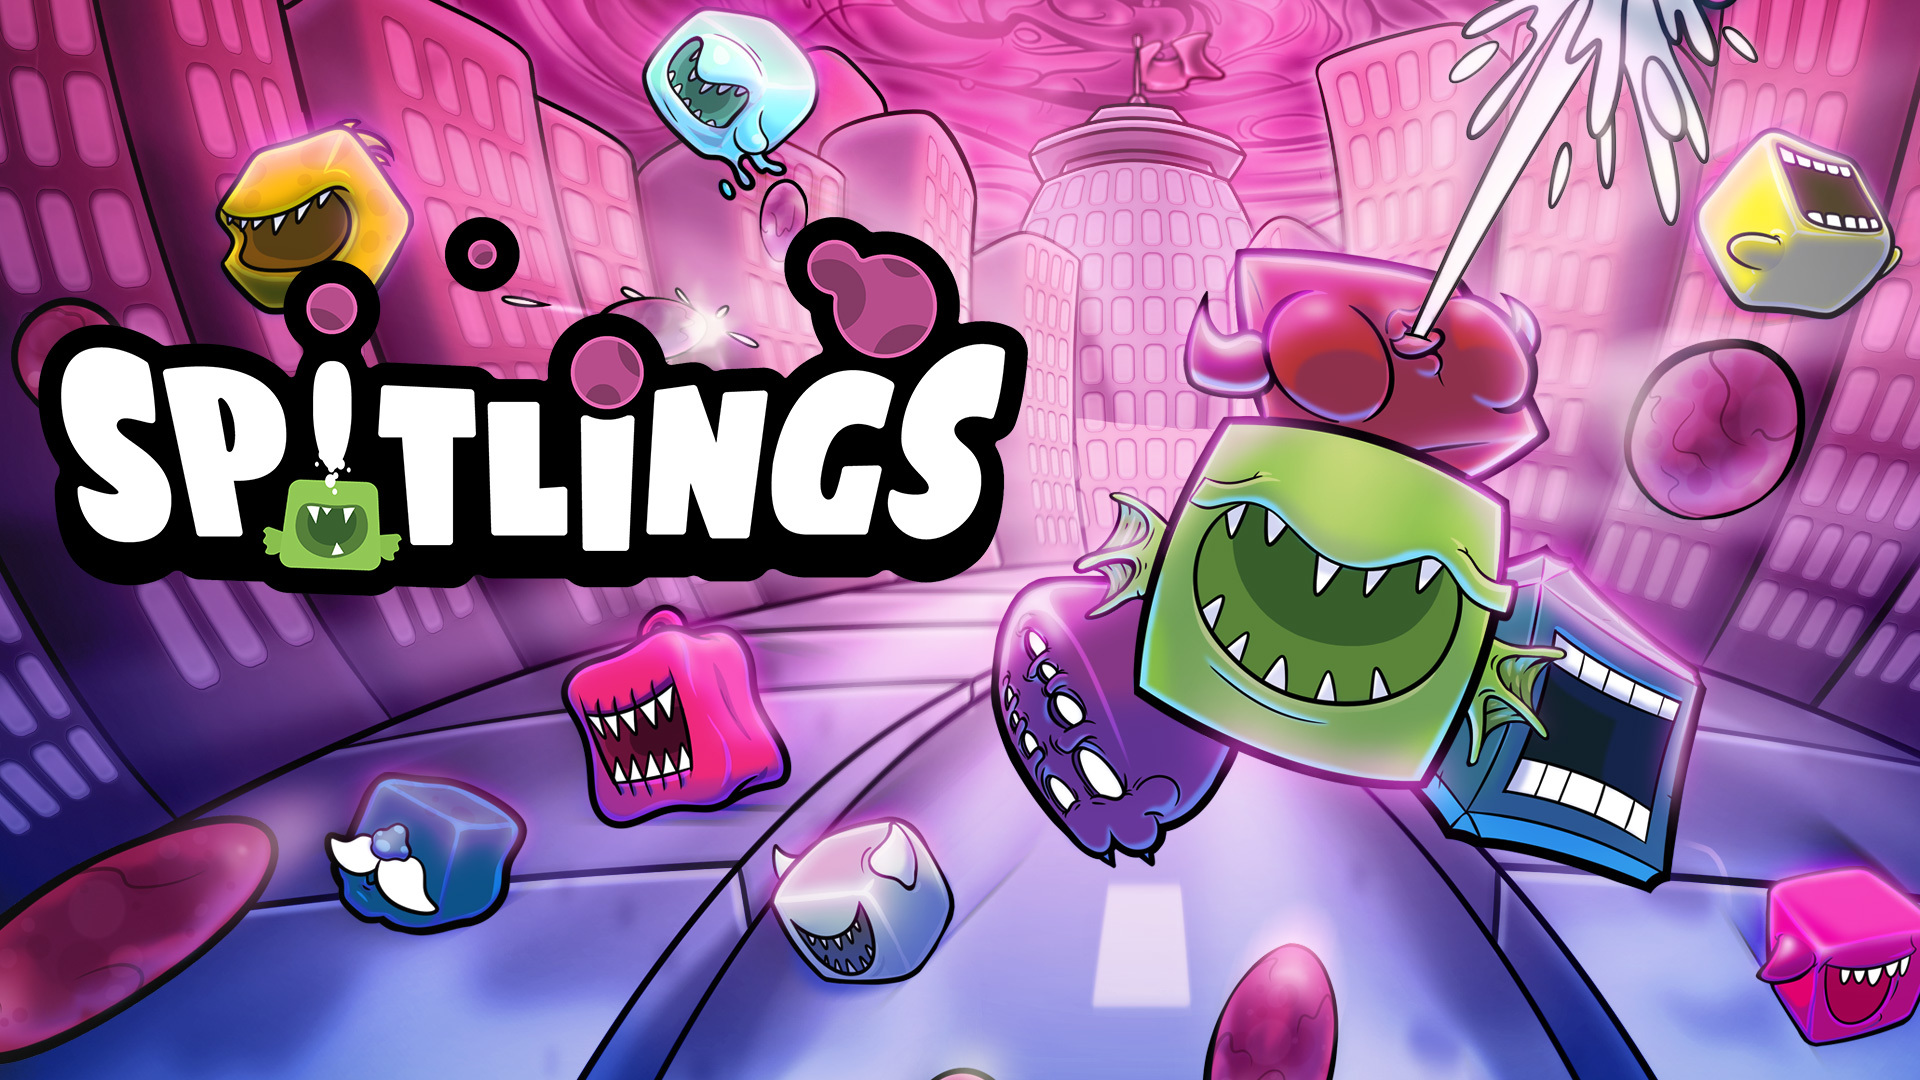 協力プレイが楽しいアクションゲーム Spitlings Steam にて年8月5日発売決定 Cnet Japan